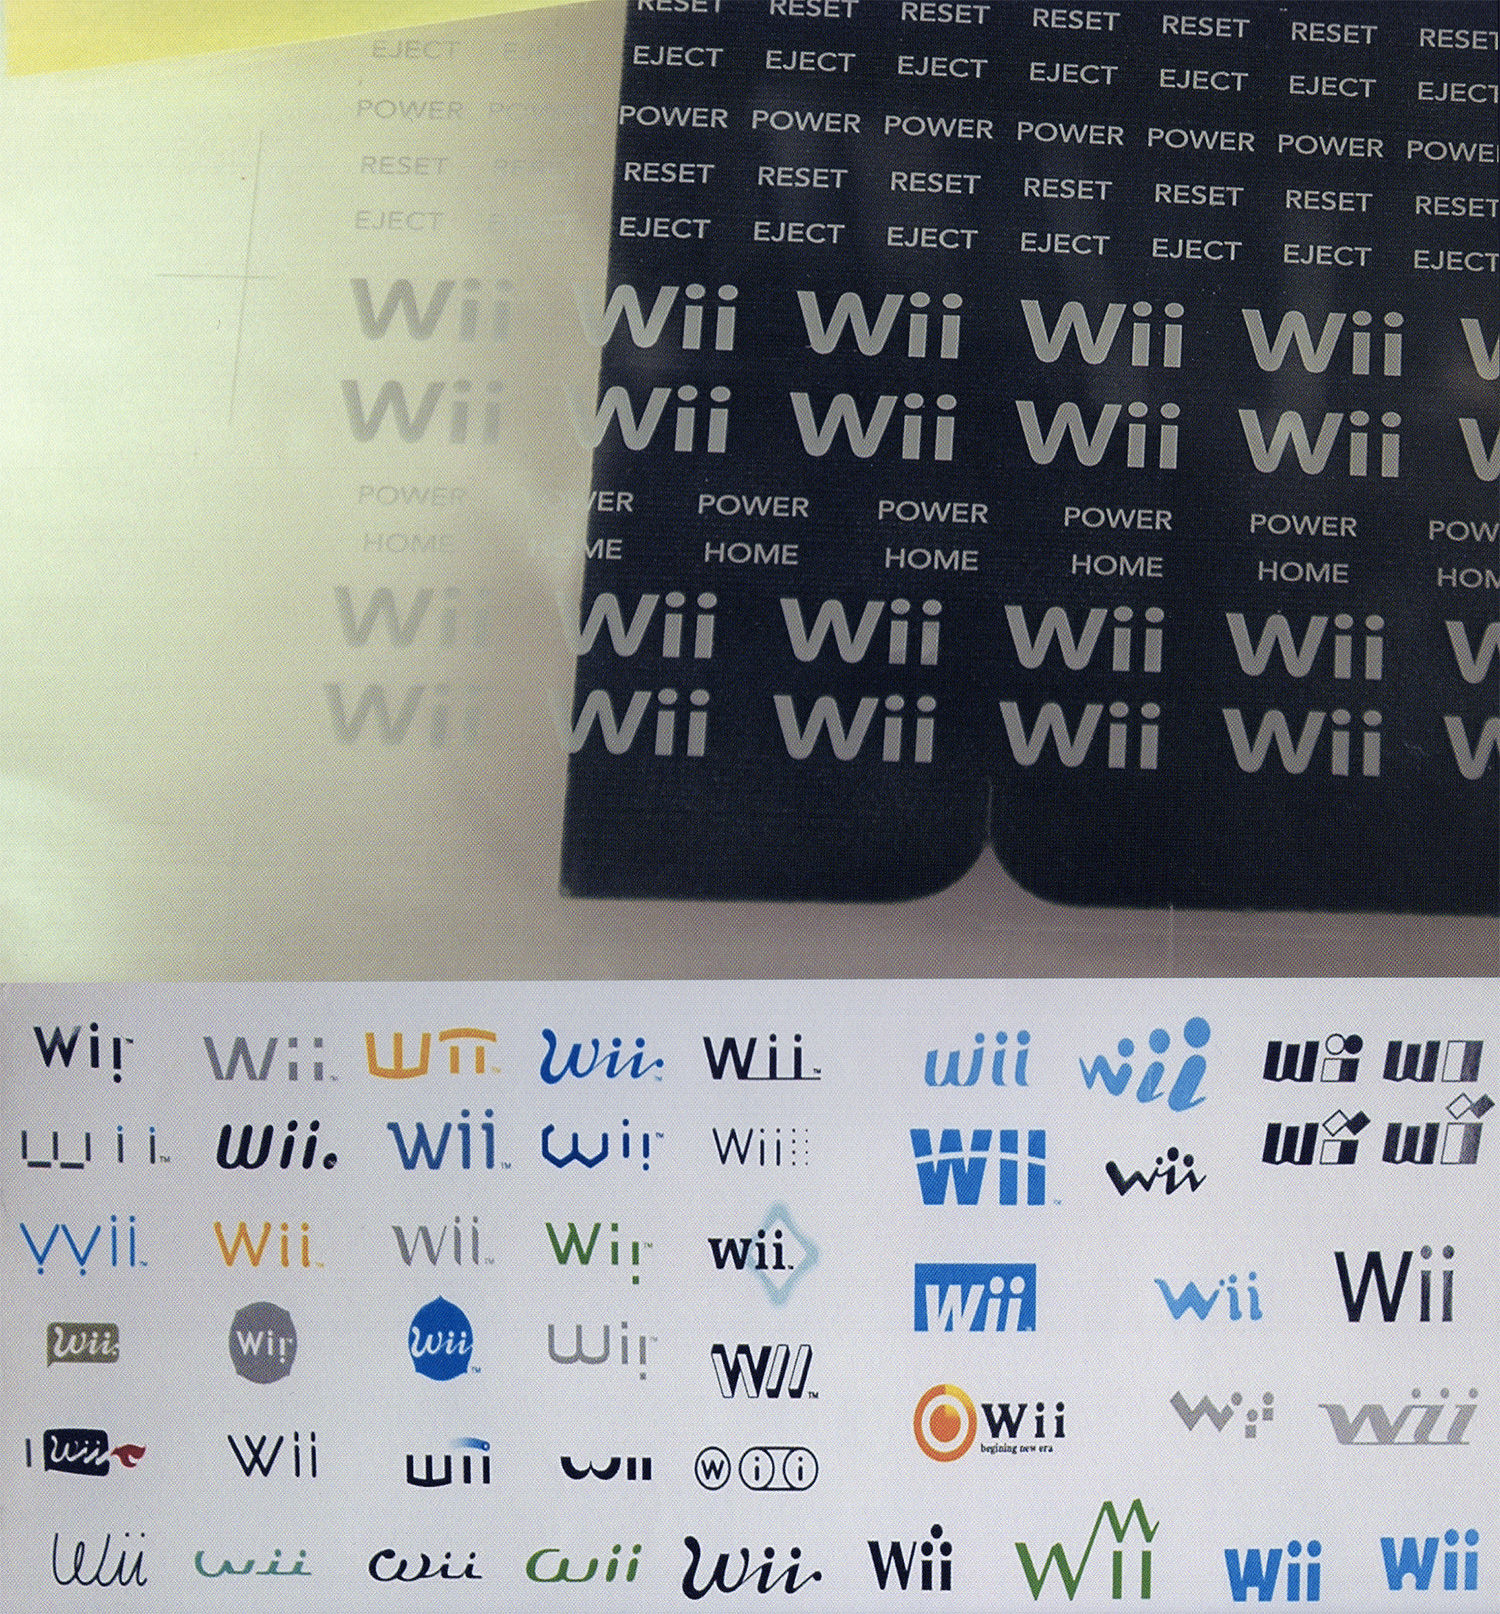 任天堂 Wii のロゴの没案が発見される Gigazine